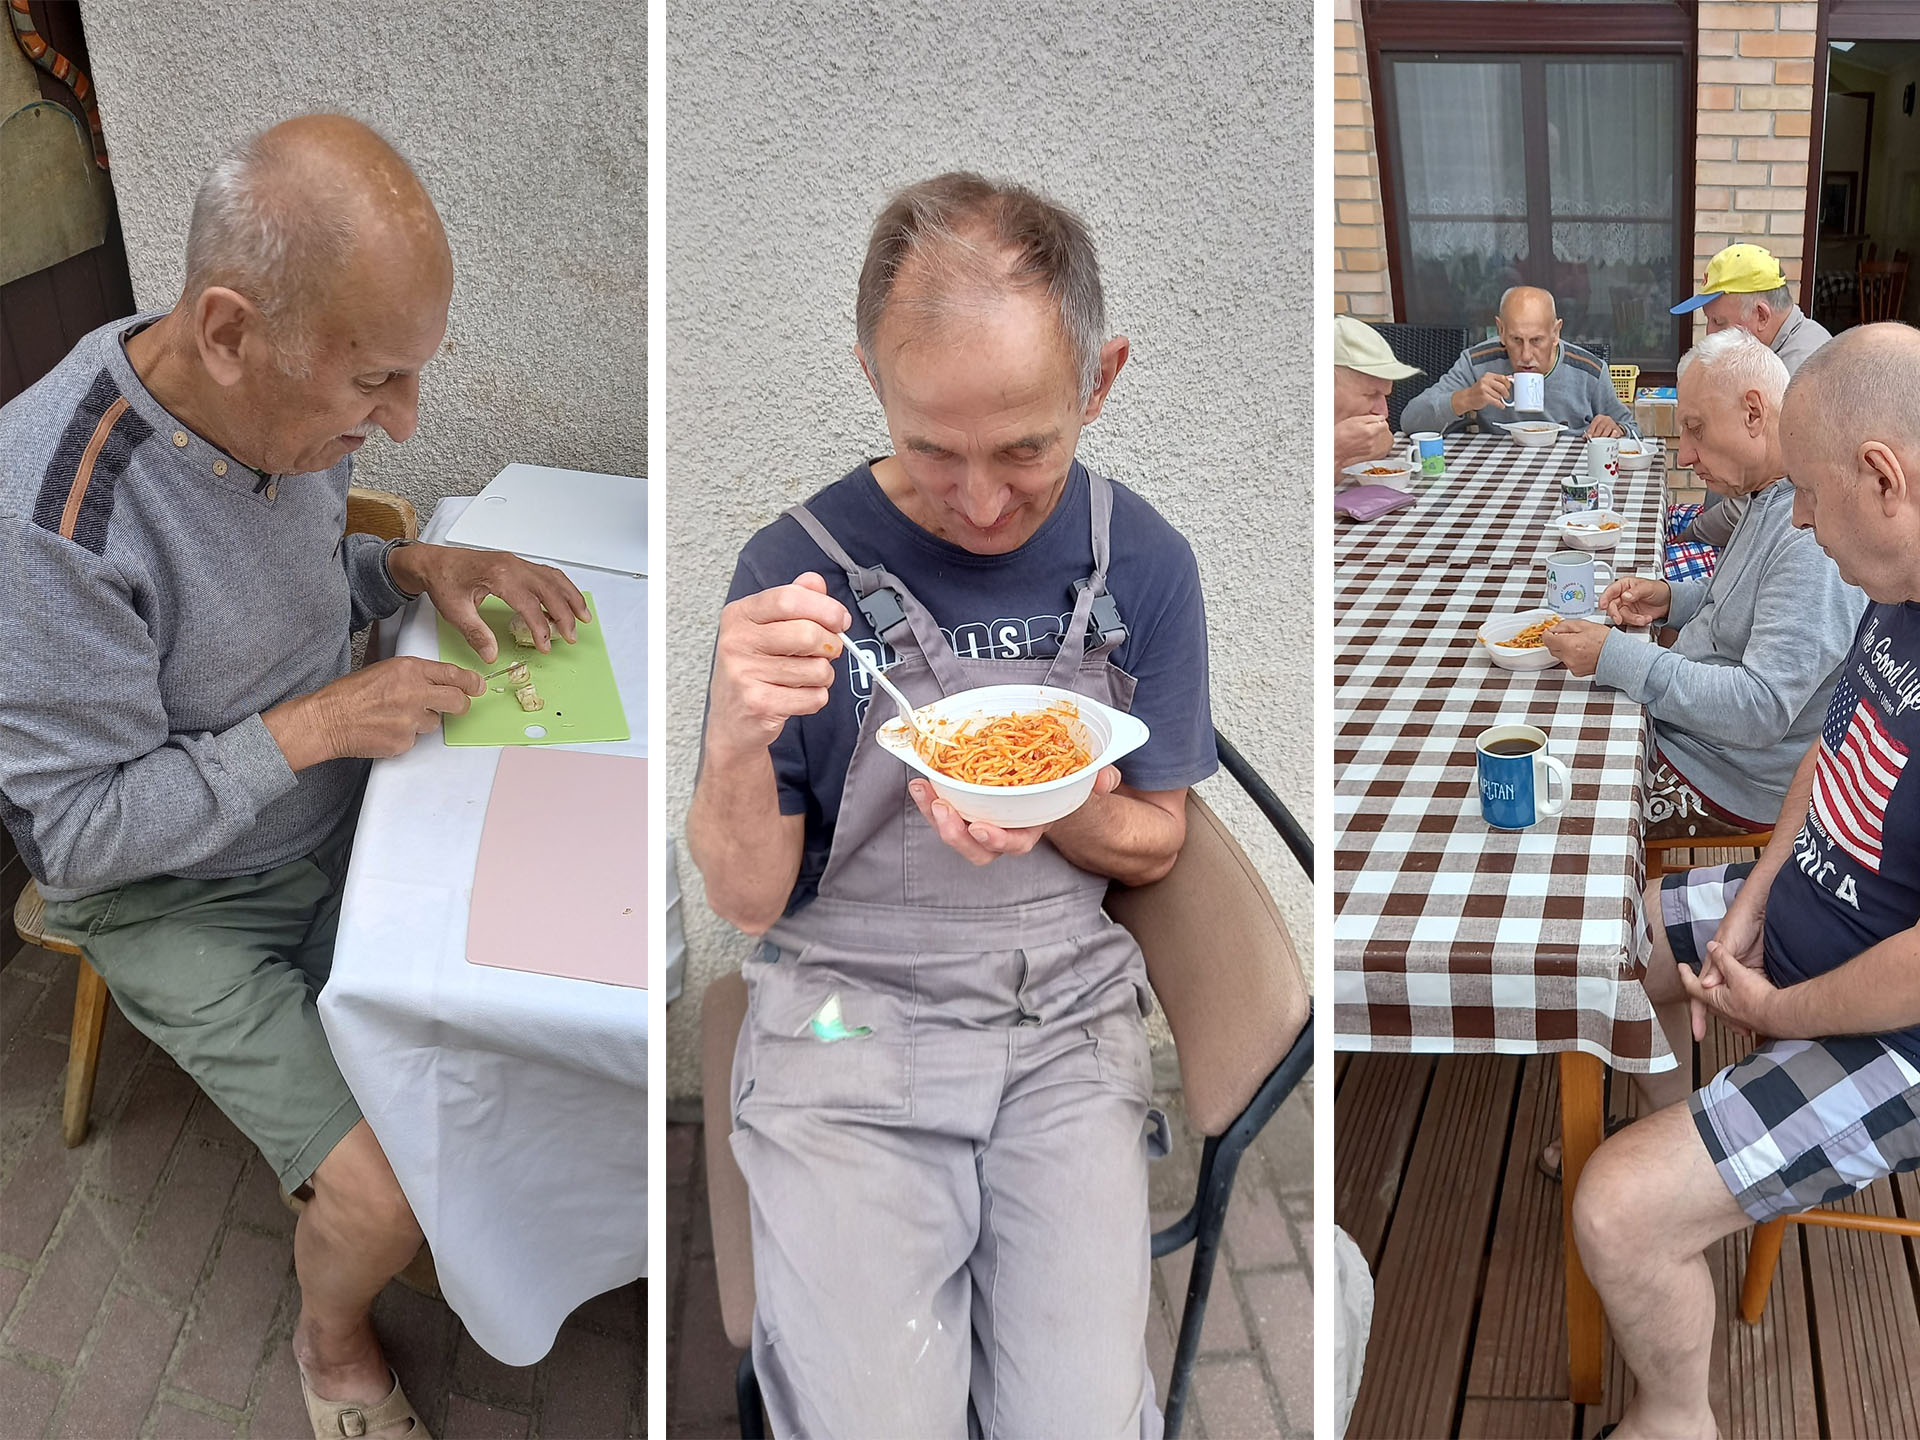 Trzy fotografie, od lewej mężczyzna co kroi cebulę przy stole, na środku mężczyzna je spaghetti, po prawej zdjęcie mężczyzn, którzy siedzą wspólnie przy stole spożywają spaghetti oraz piją kawę.